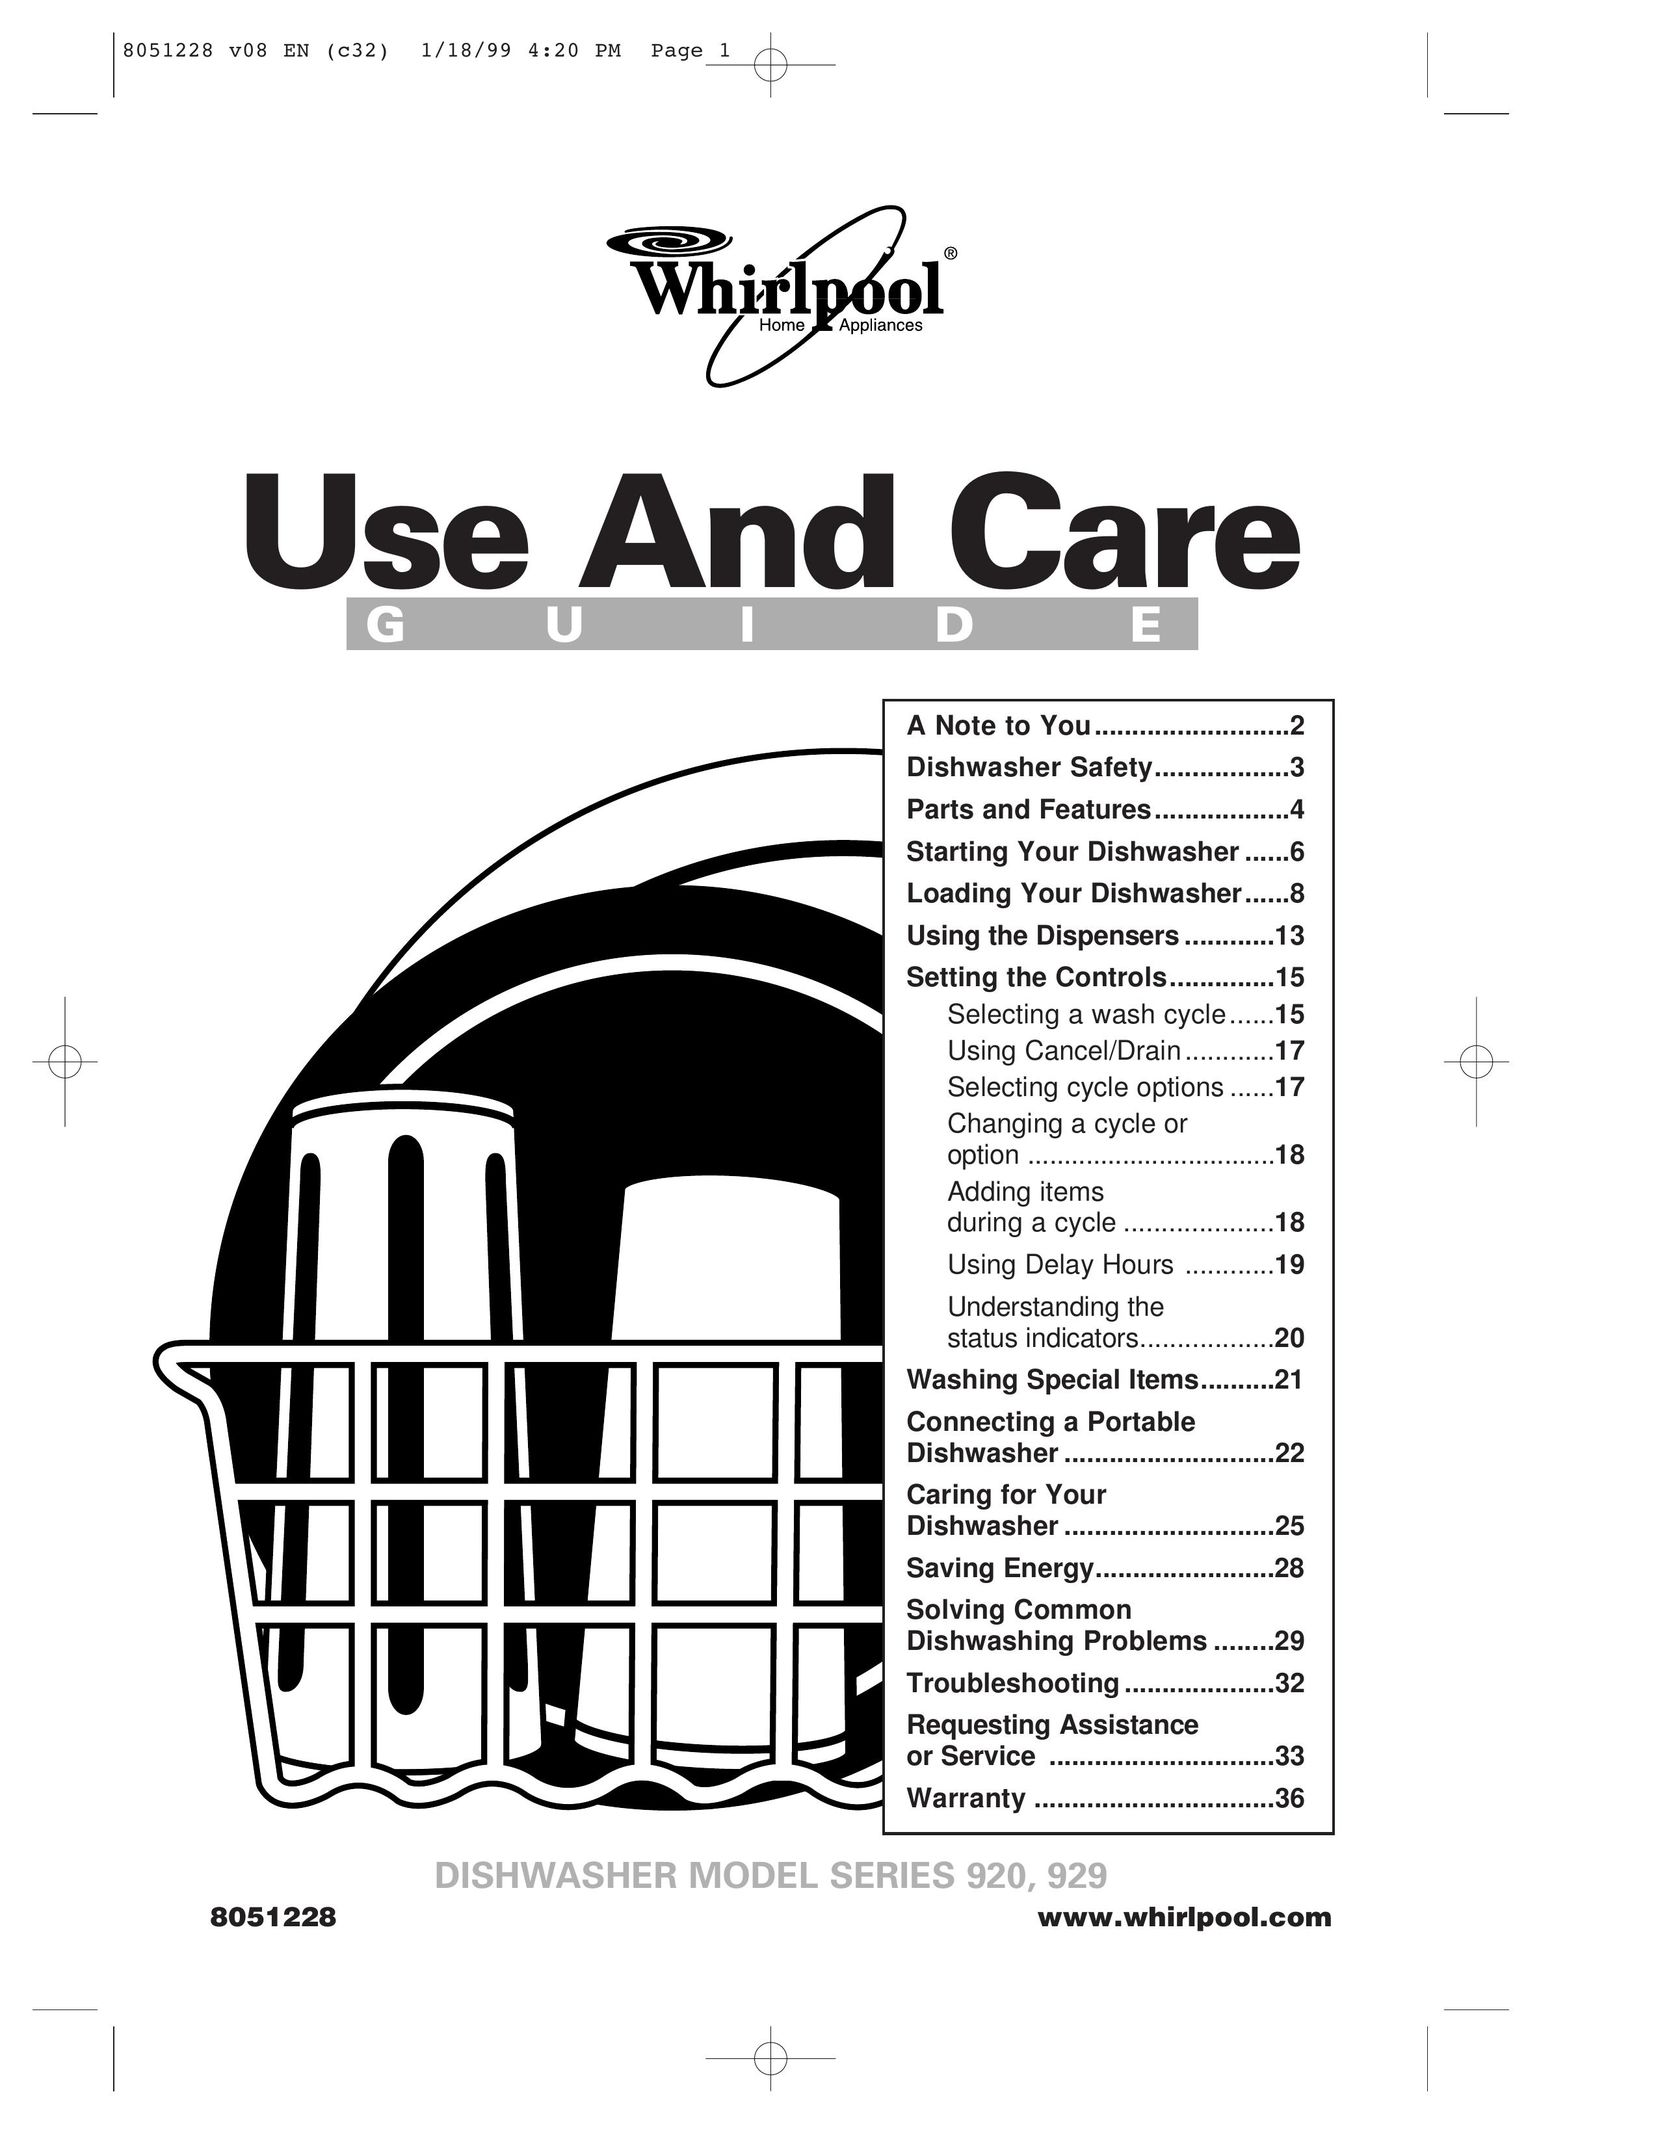 Whirlpool 920 Dishwasher User Manual